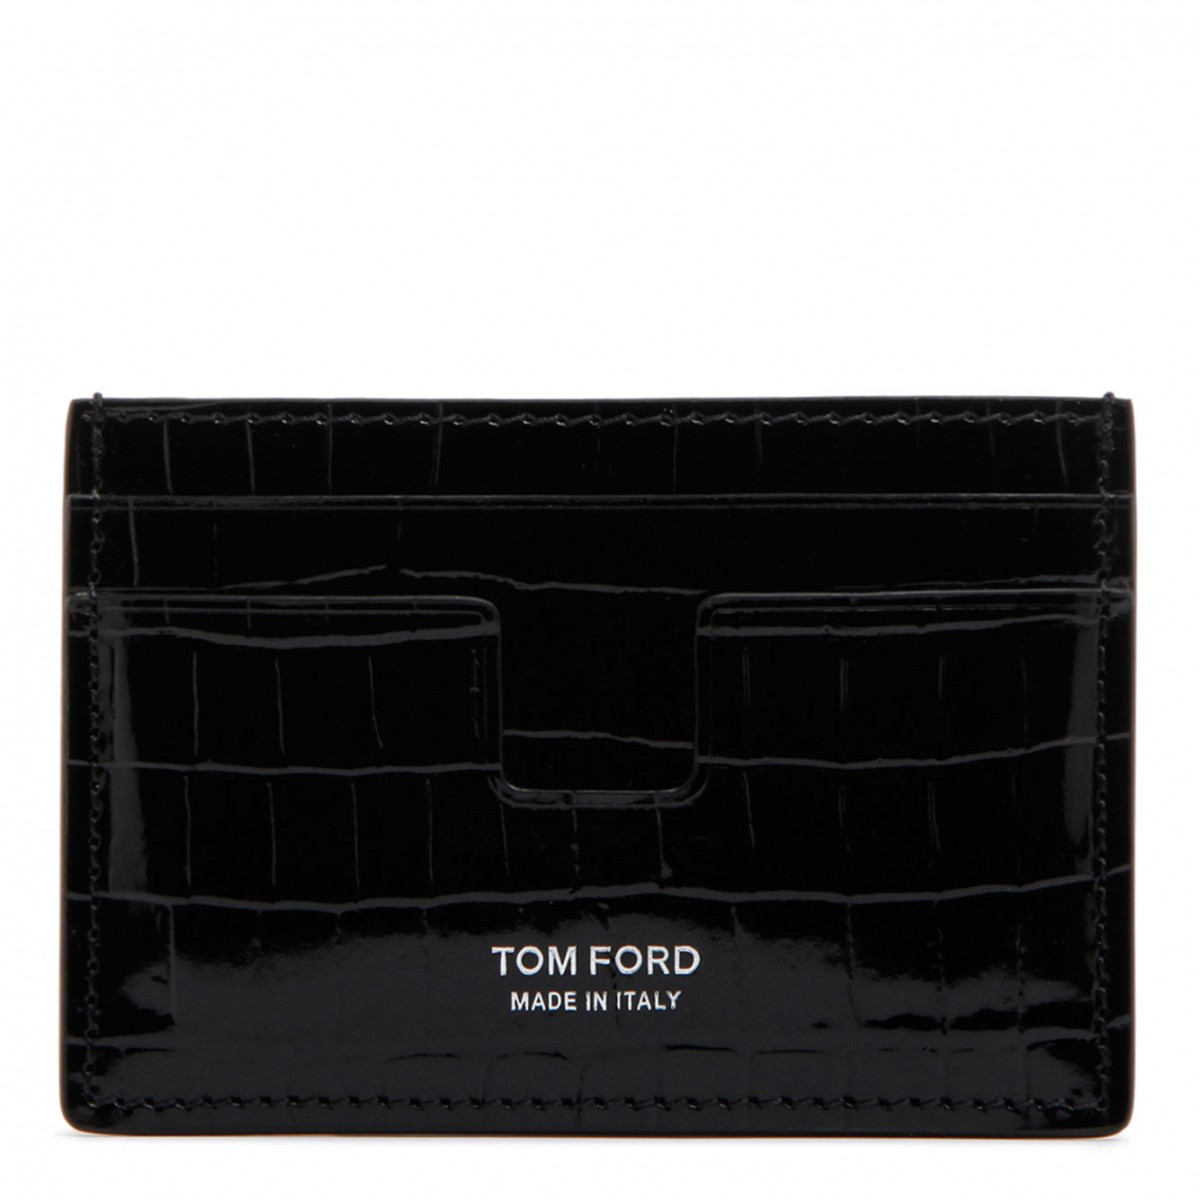 Tom Ford Black Calf Leather Alligator Cardholder. 